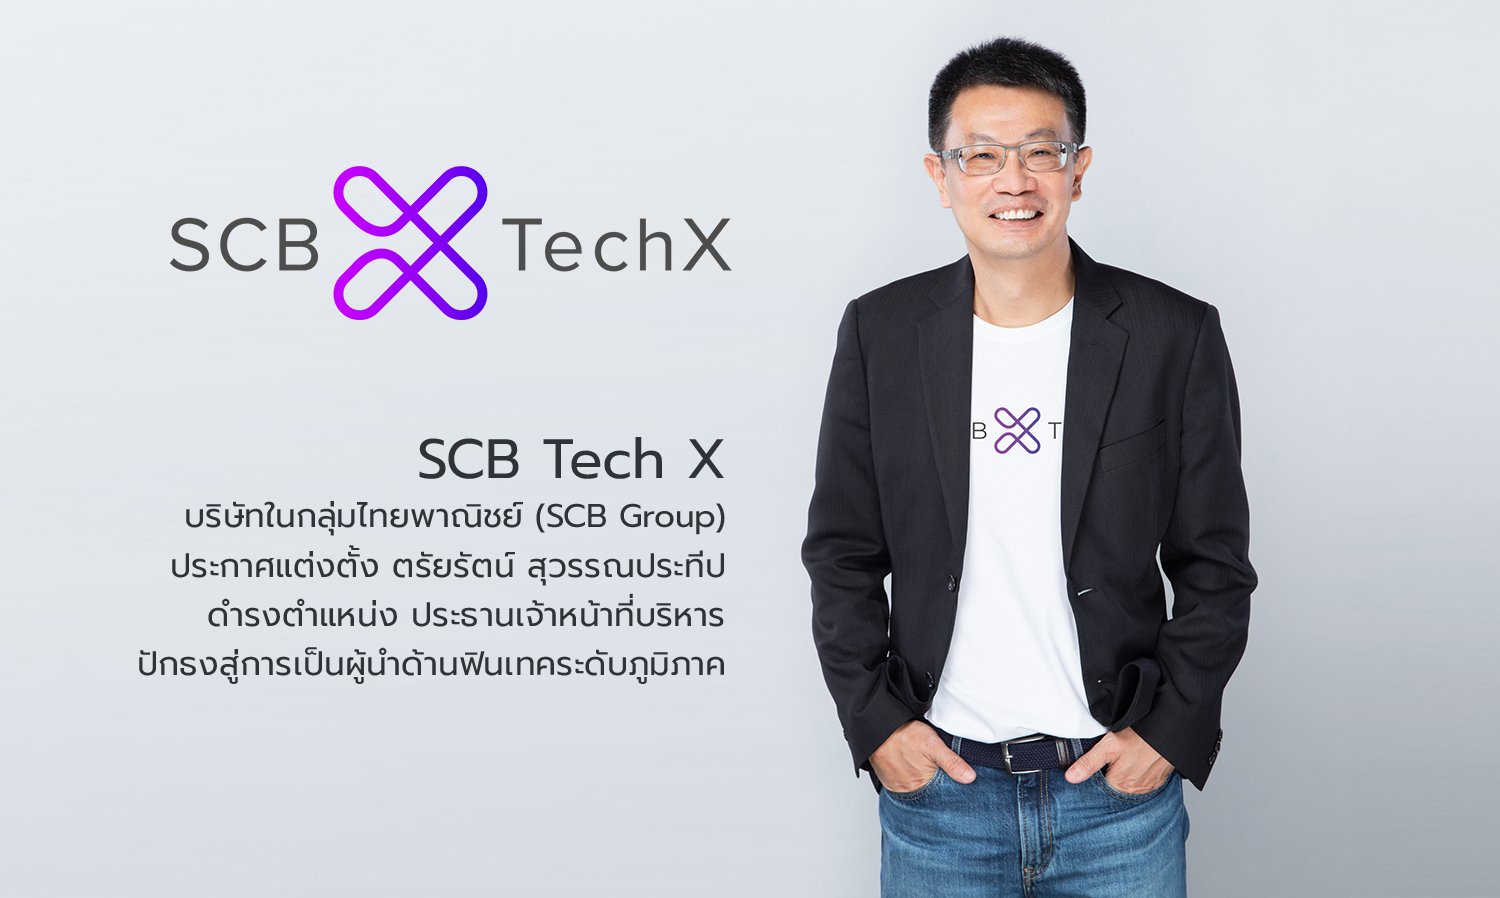 scb-tech-x-บริษัทในกลุ่มไทยพาณิชย์-scb-group-ประกาศแต่งตั้ง-ตรัยรัตน์-สุวรรณประทีป-ดำรงตำแหน่ง-ประธานเจ้าหน้าที่บริหาร-ปักธงสู่การเป็นผู้นำด้านฟินเทคระดับภูมิภาค